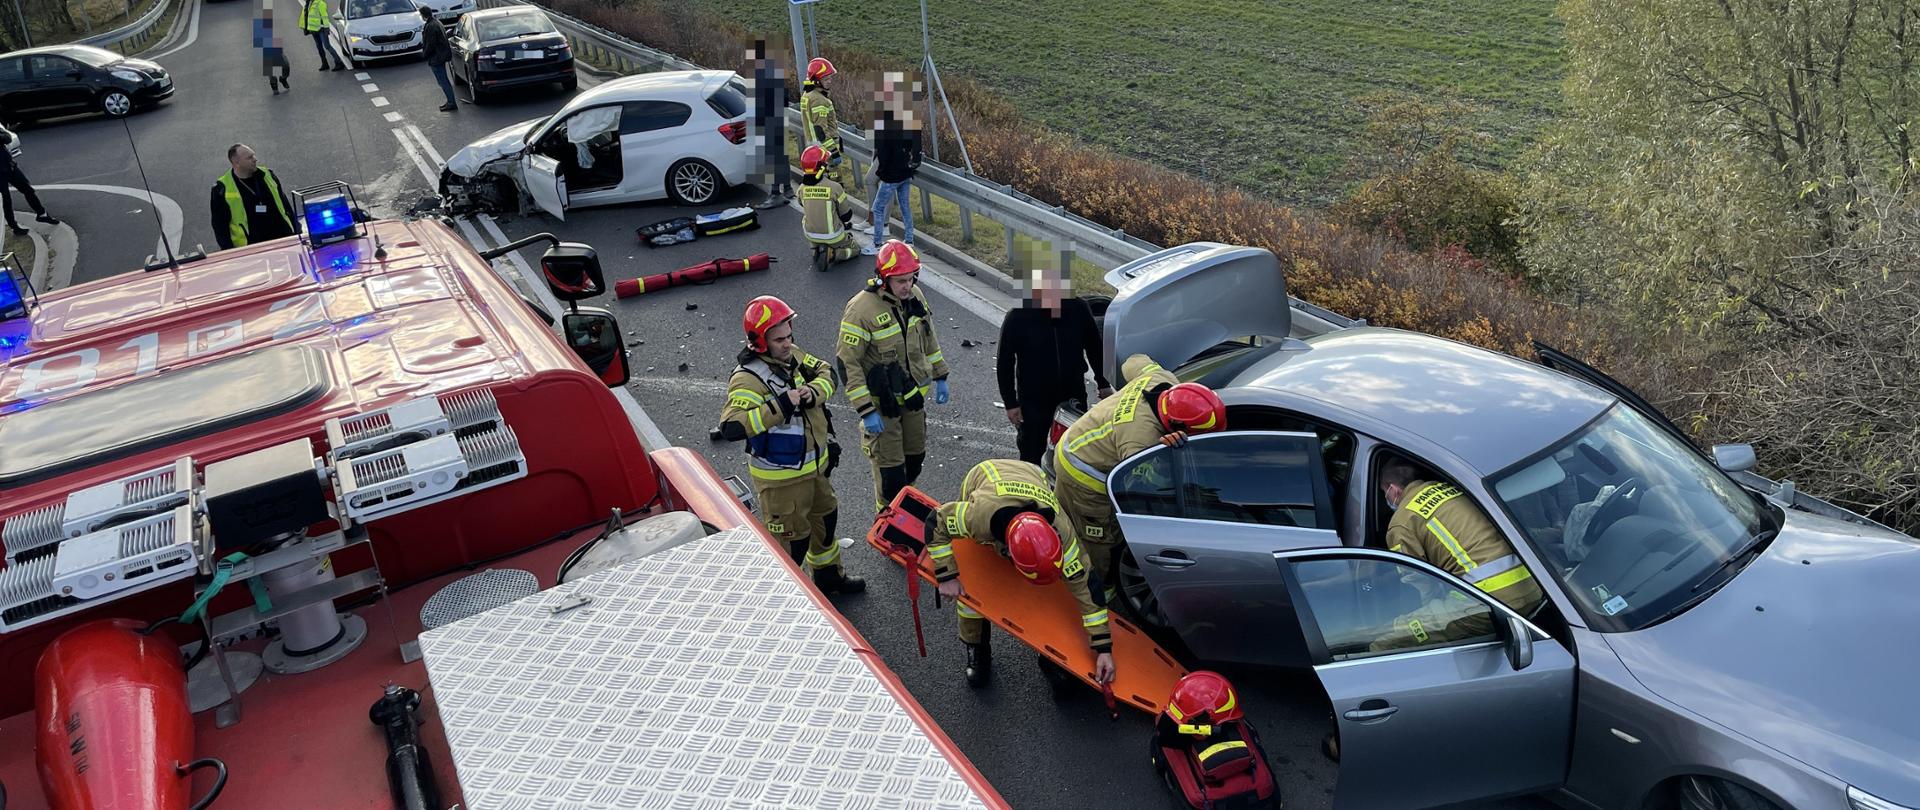 na zdjęciu widać uszkodzone dwa samochody jeden koloru białego drugi koloru szarego wokół samochodów znajdują się strażacy ze sprzętem medycznym obok samochodu siwego samochód strażacki czerwony jeden ze strażaków trzyma deskę ortopedyczna koloru pomarańczowego natomiast dwóch strażaków znajduje się w środku auta siwego udziela pomocy poszkodowanej osobie, dalej przy białym samochodzie jest strażak oraz dwie osoby 